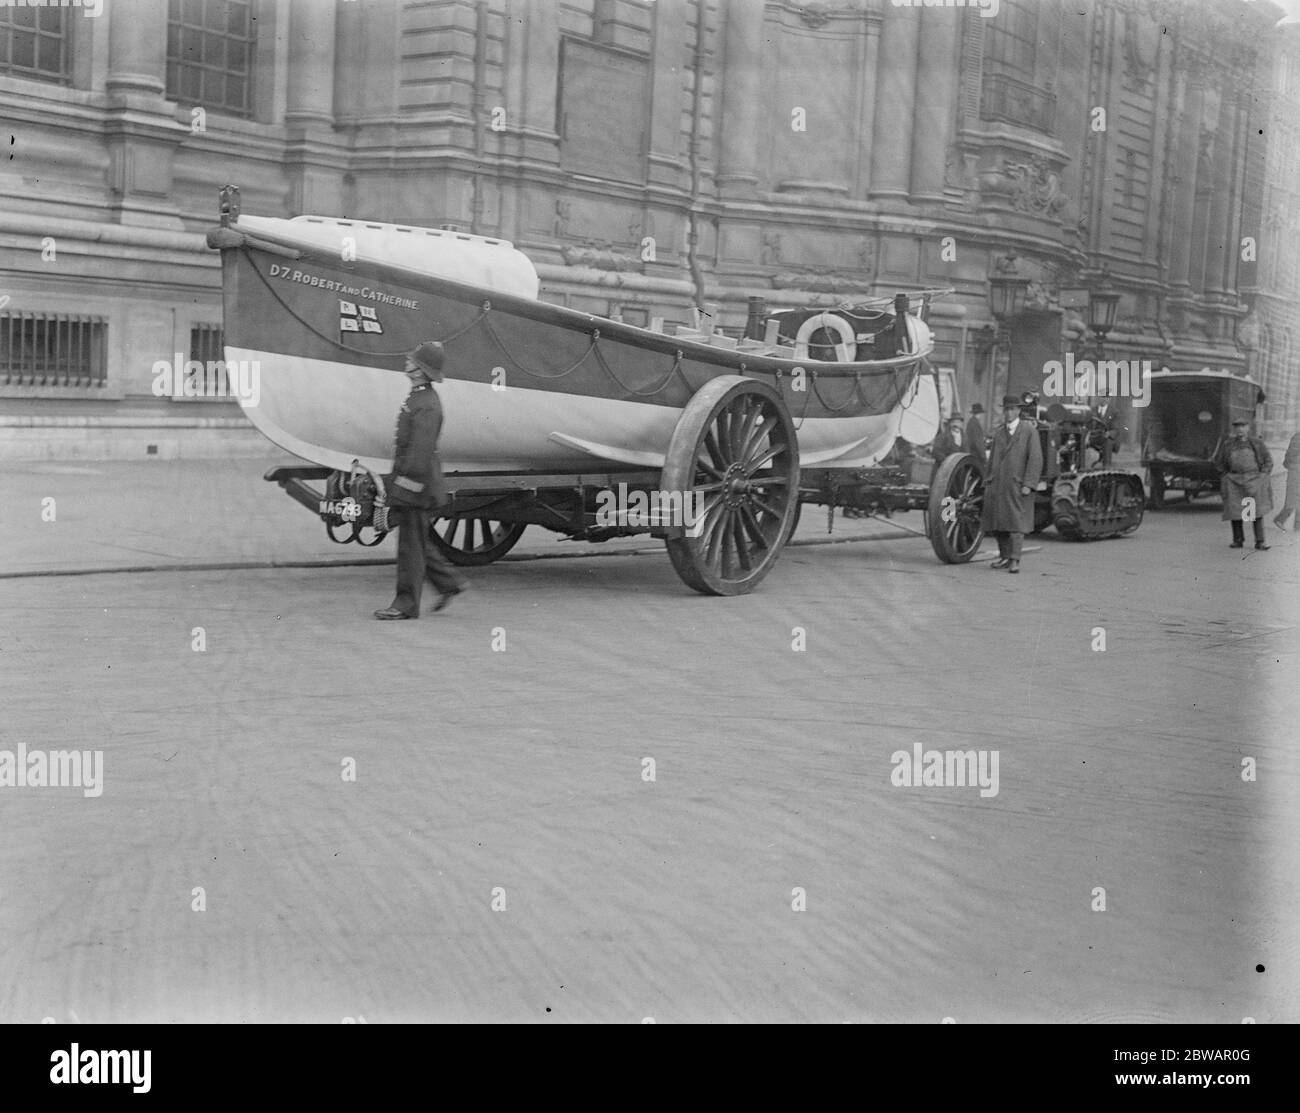 La scialuppa di salvataggio è stata portata a Londra per l'ispezione di sua altezza reale D 7 Robert & Catherine bagnino 28 aprile 1921 Foto Stock